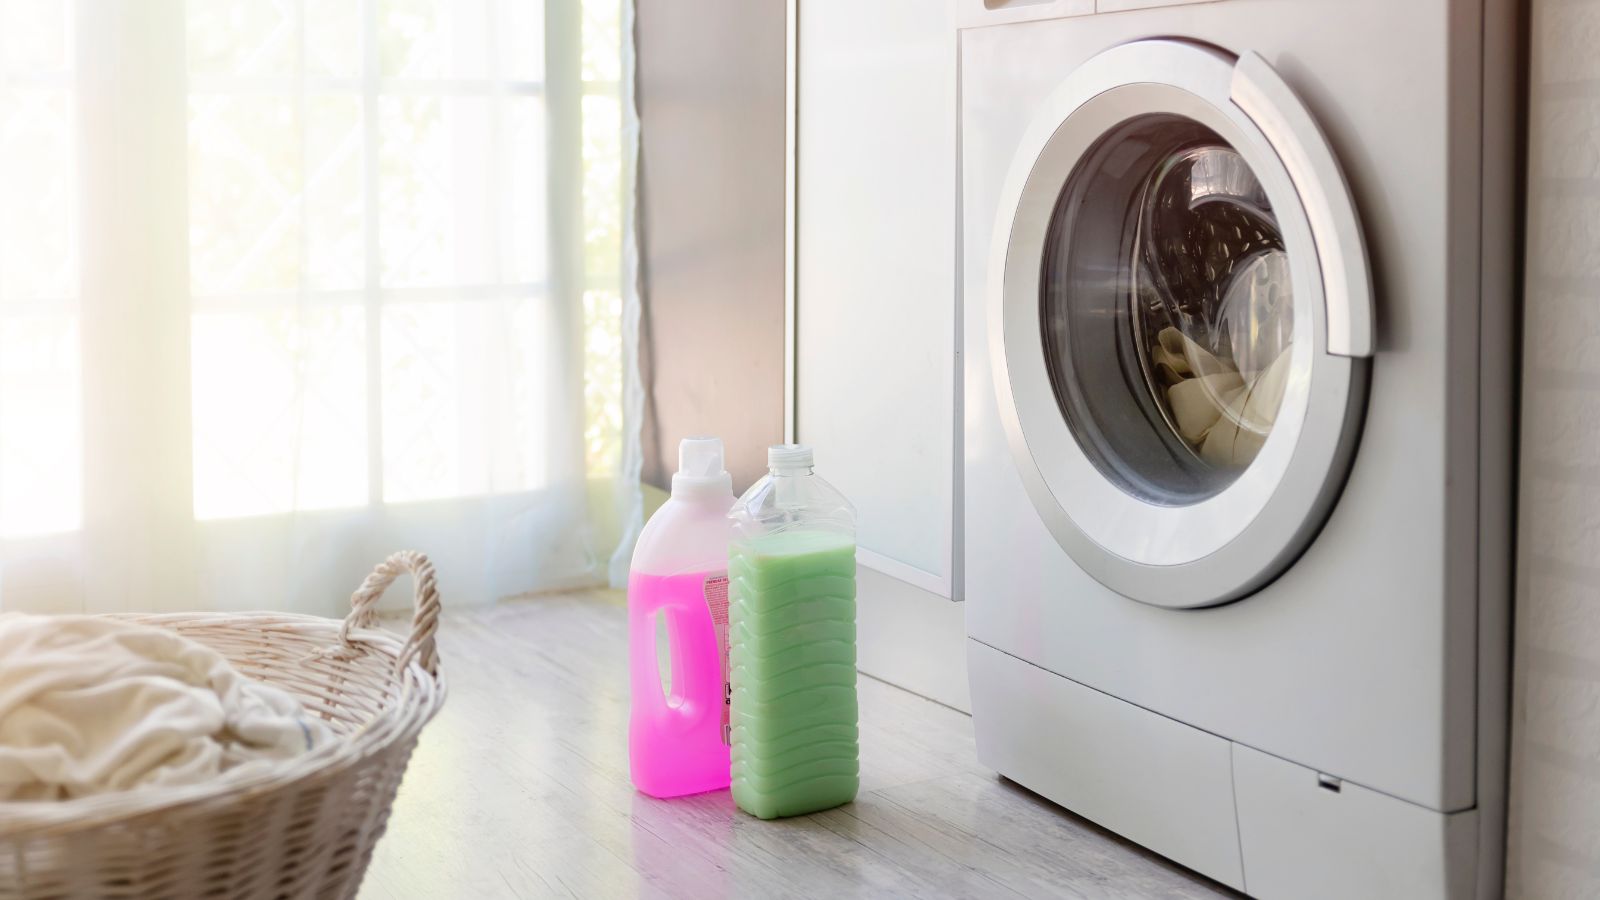 Can You Use Washing Up Liquid In Washing Machine